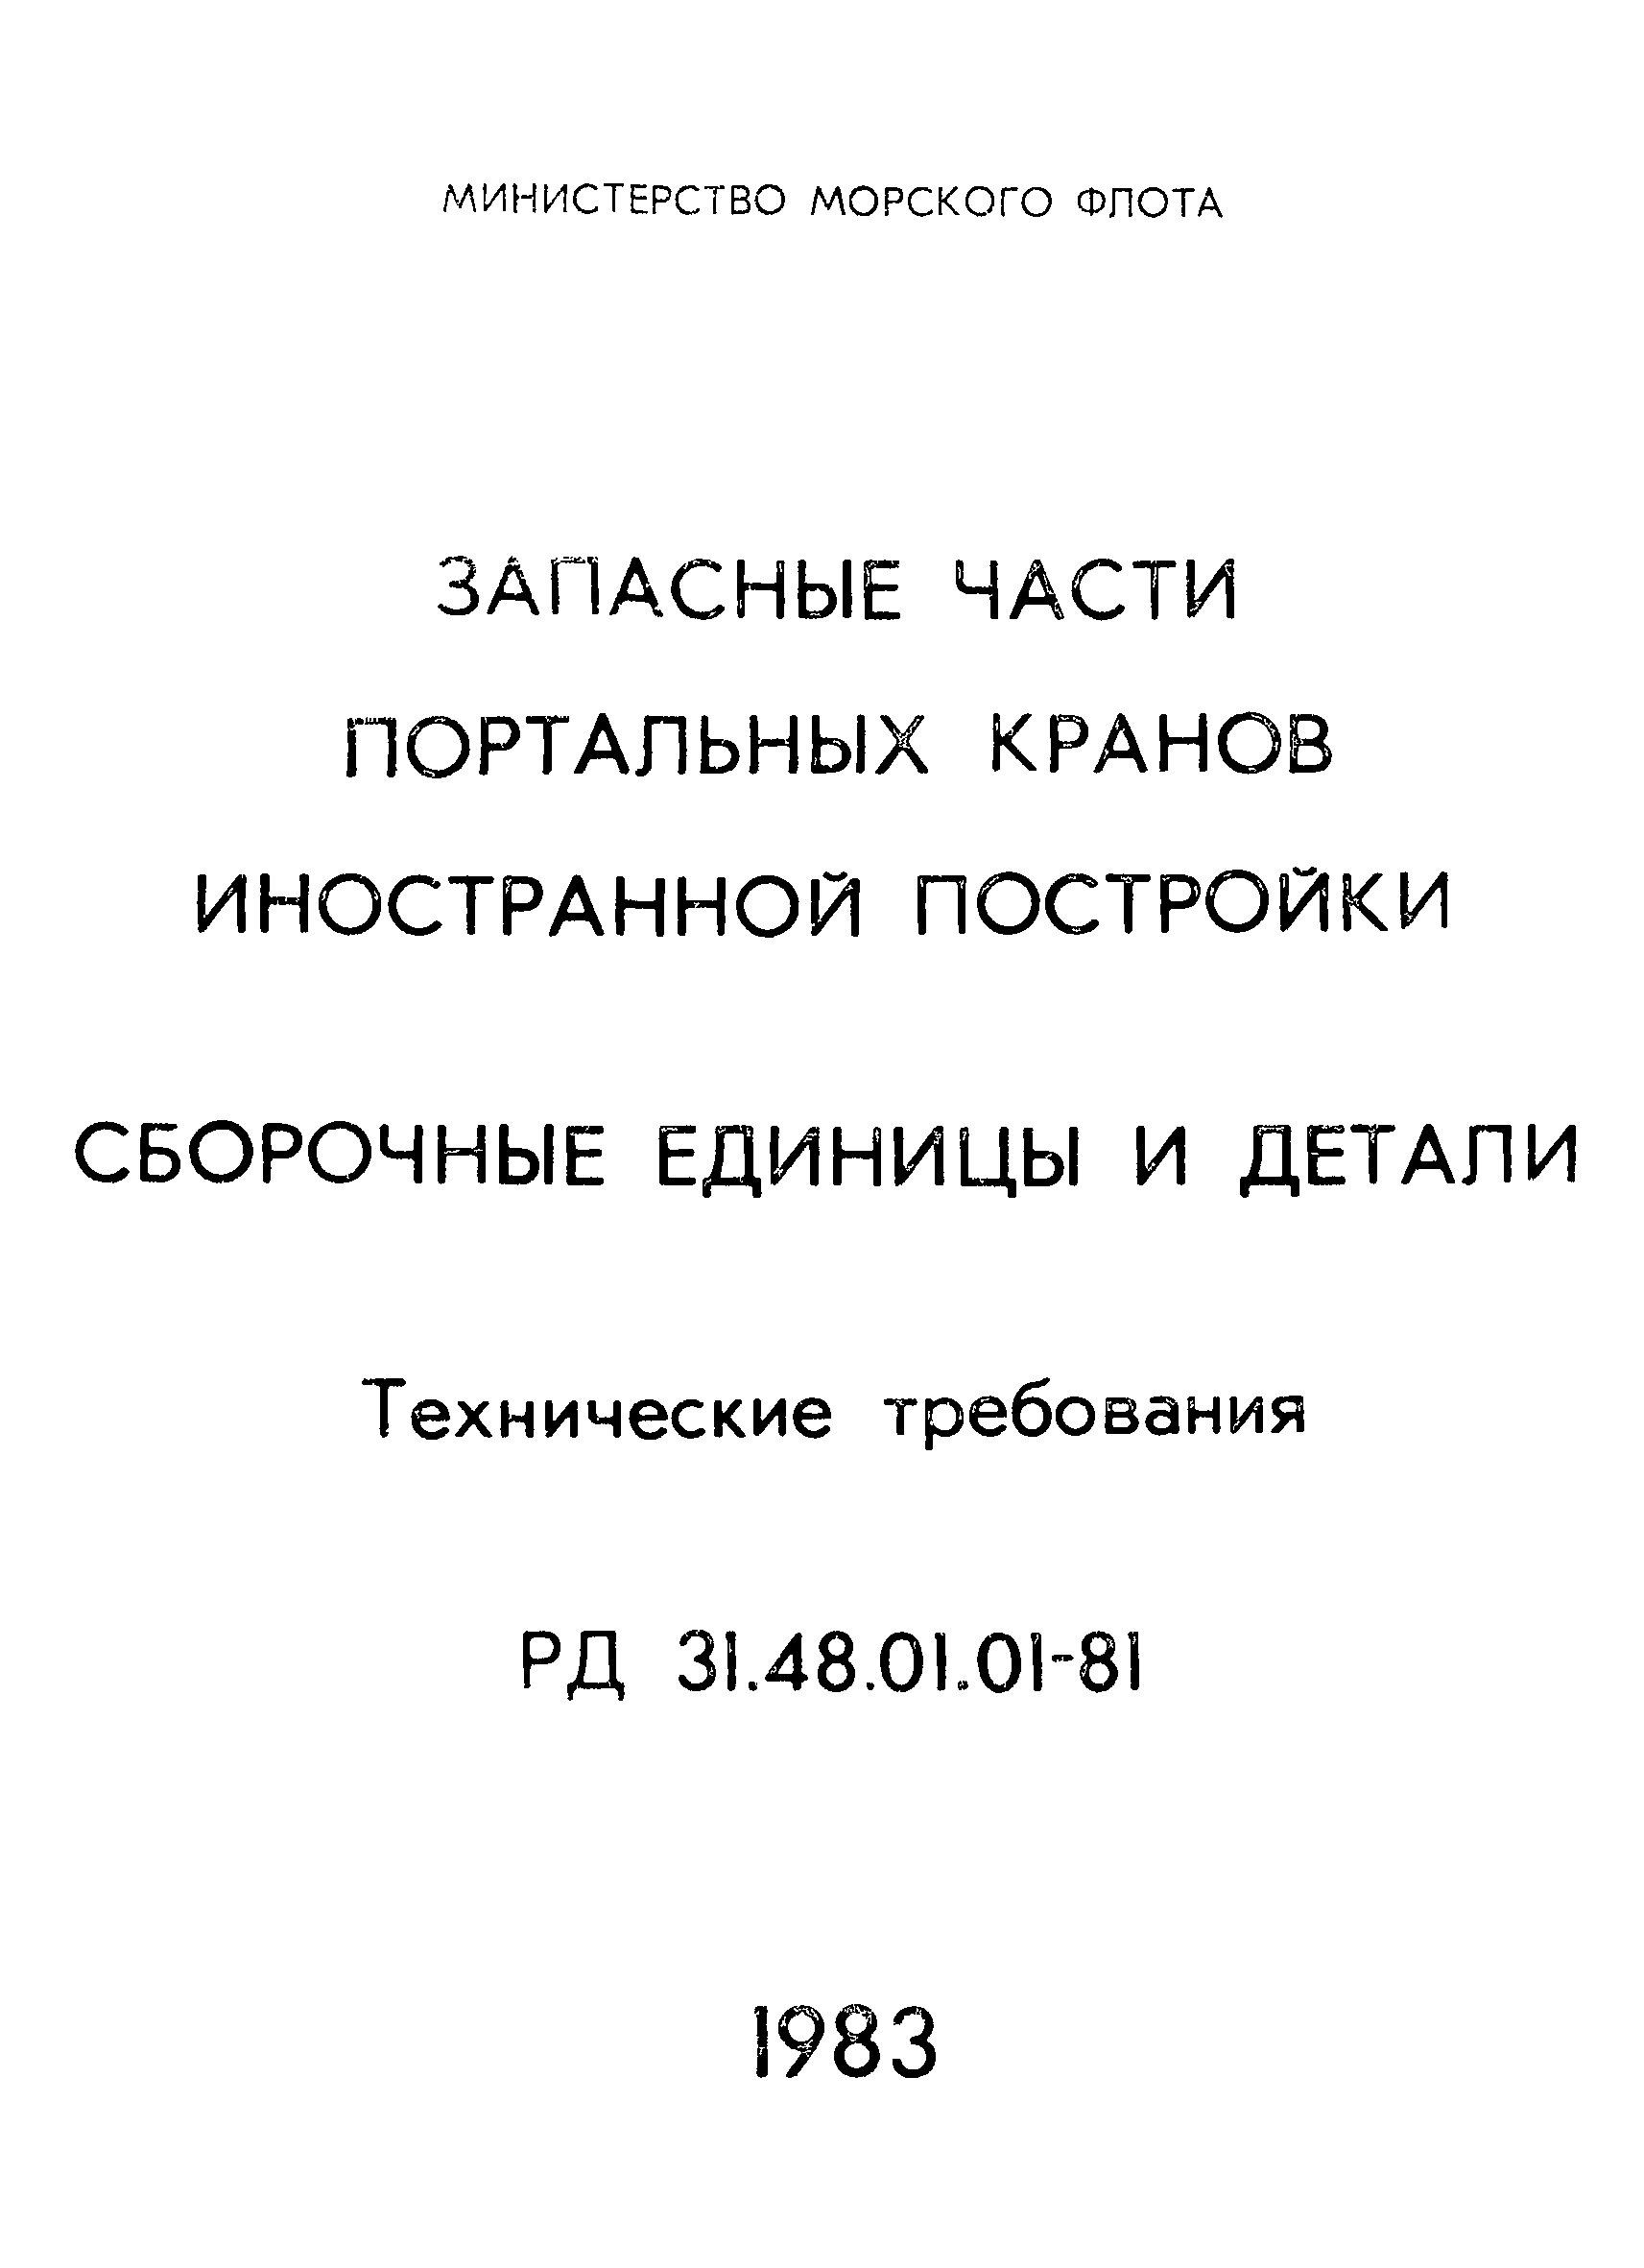 РД 31.48.01.01-81